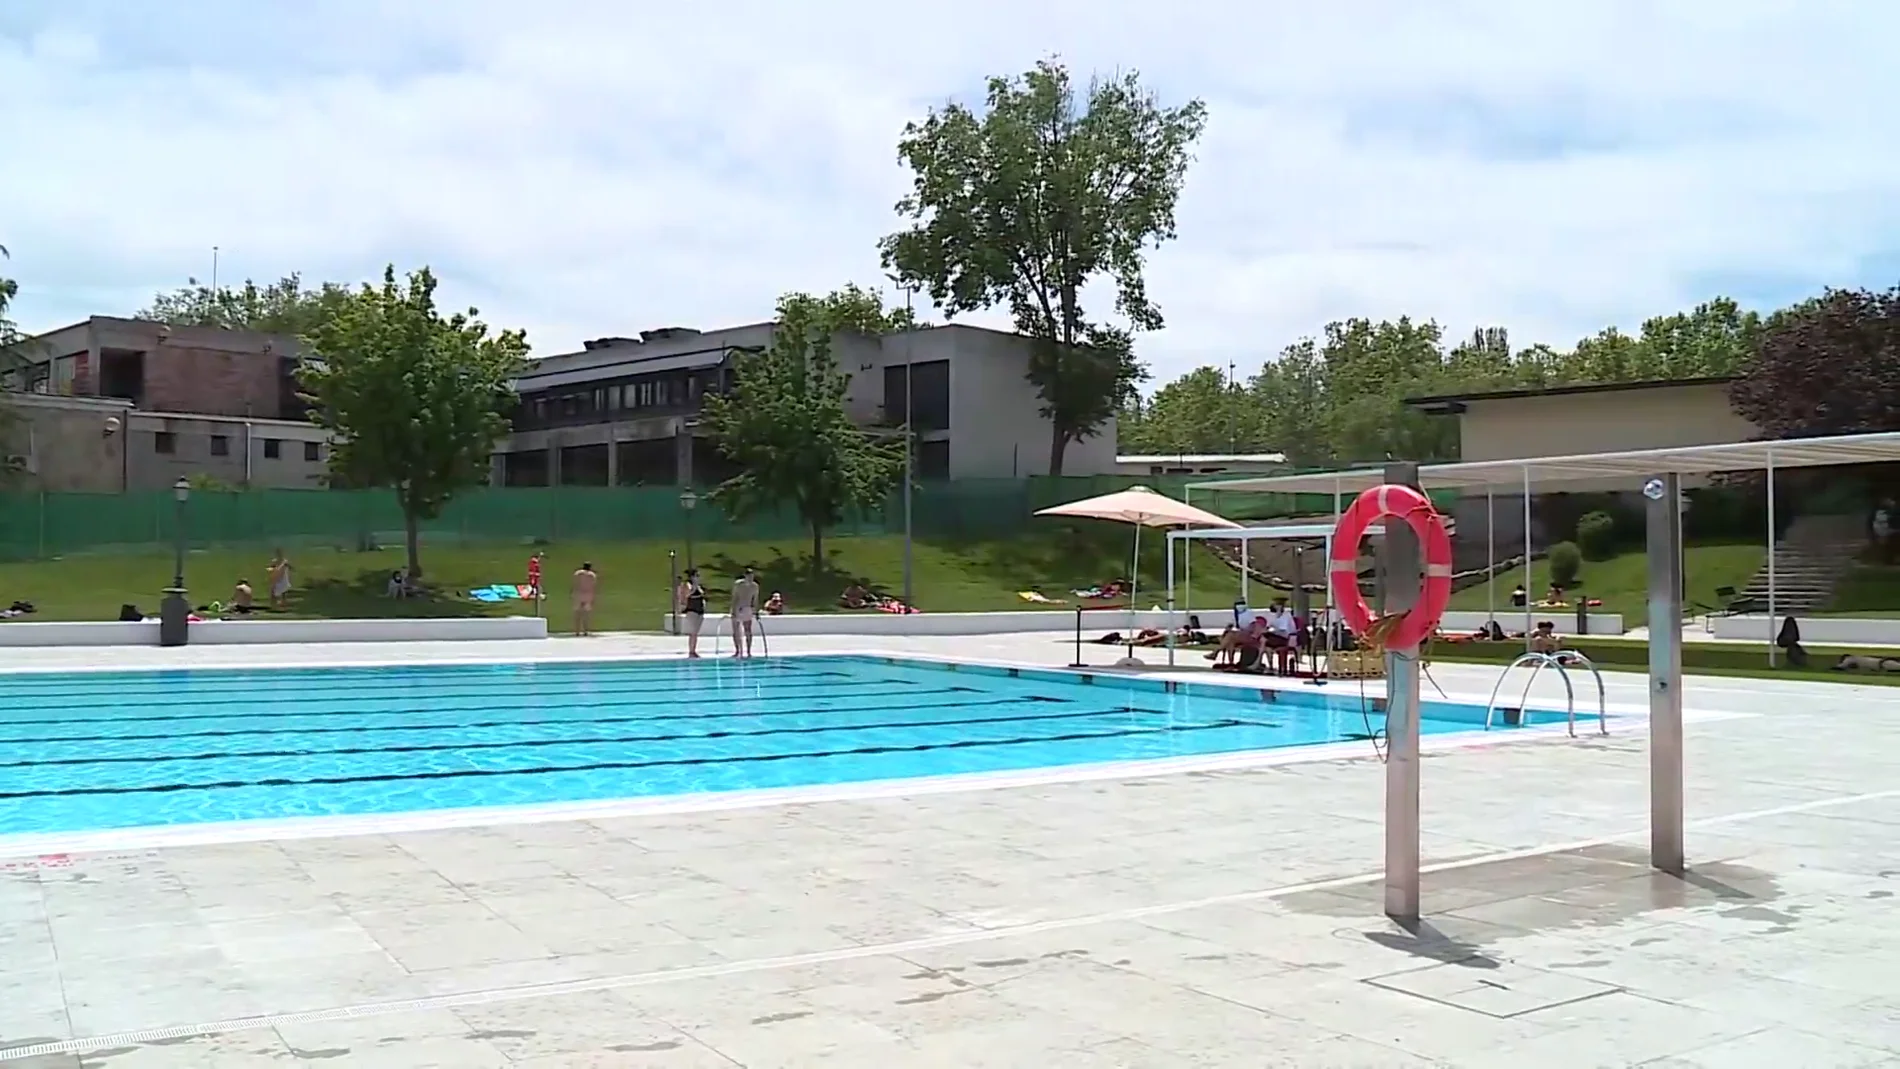 Comienza la temporada de piscinas en Madrid con nuevas medidas y restricciones